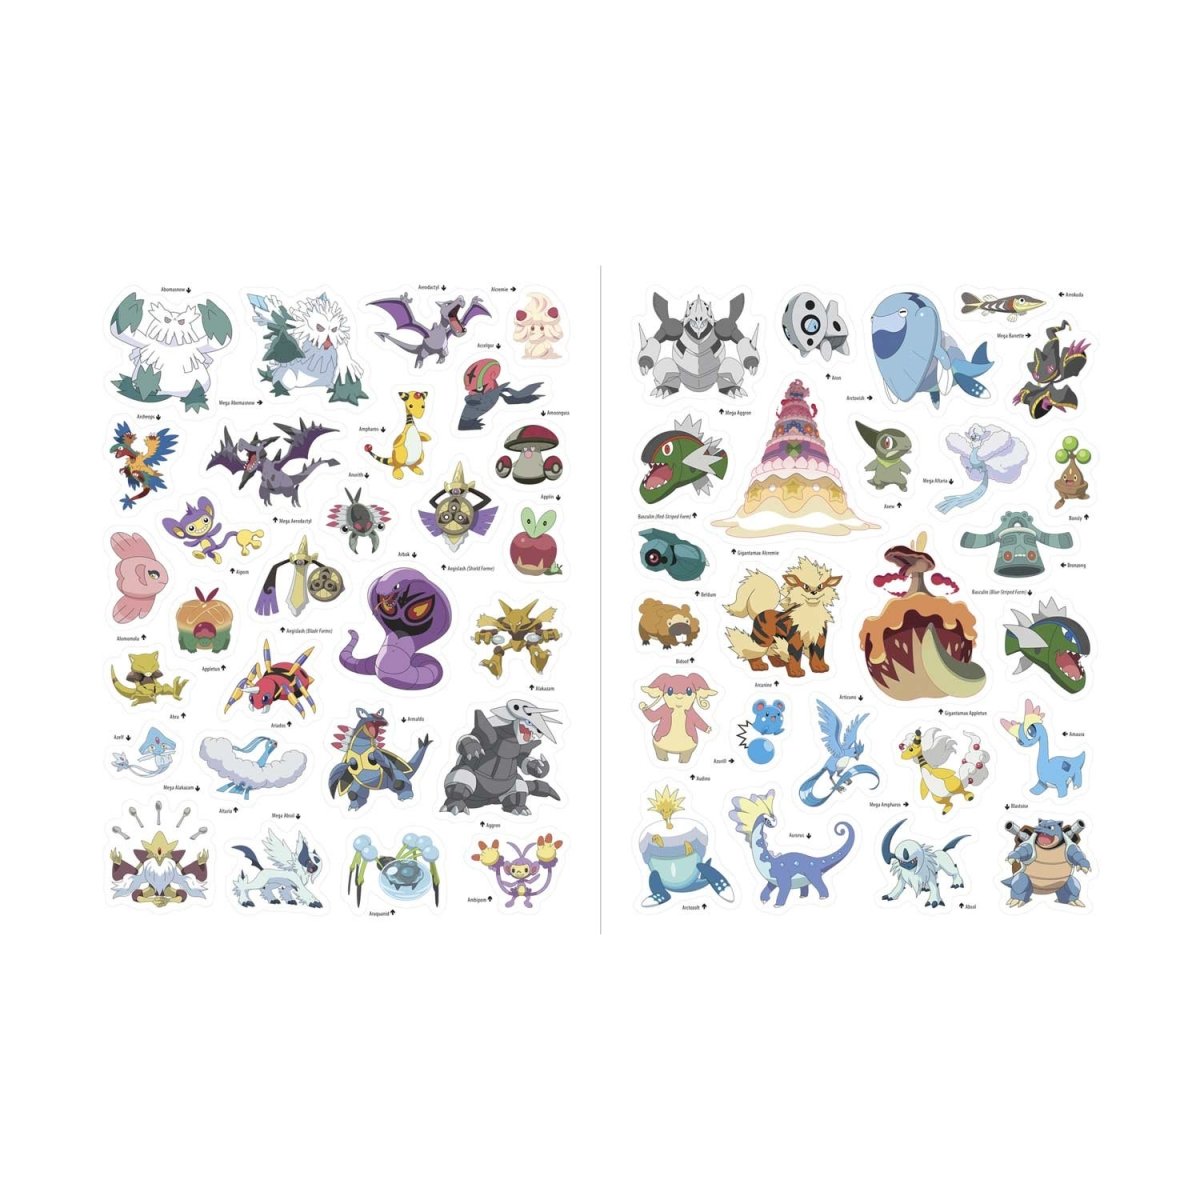 Pokémon Epic Sticker Collection 2nd Edition: From Kanto To Galar - (pokemon  Epic Sticker Collection) By Pikachu Press (paperback) : Target